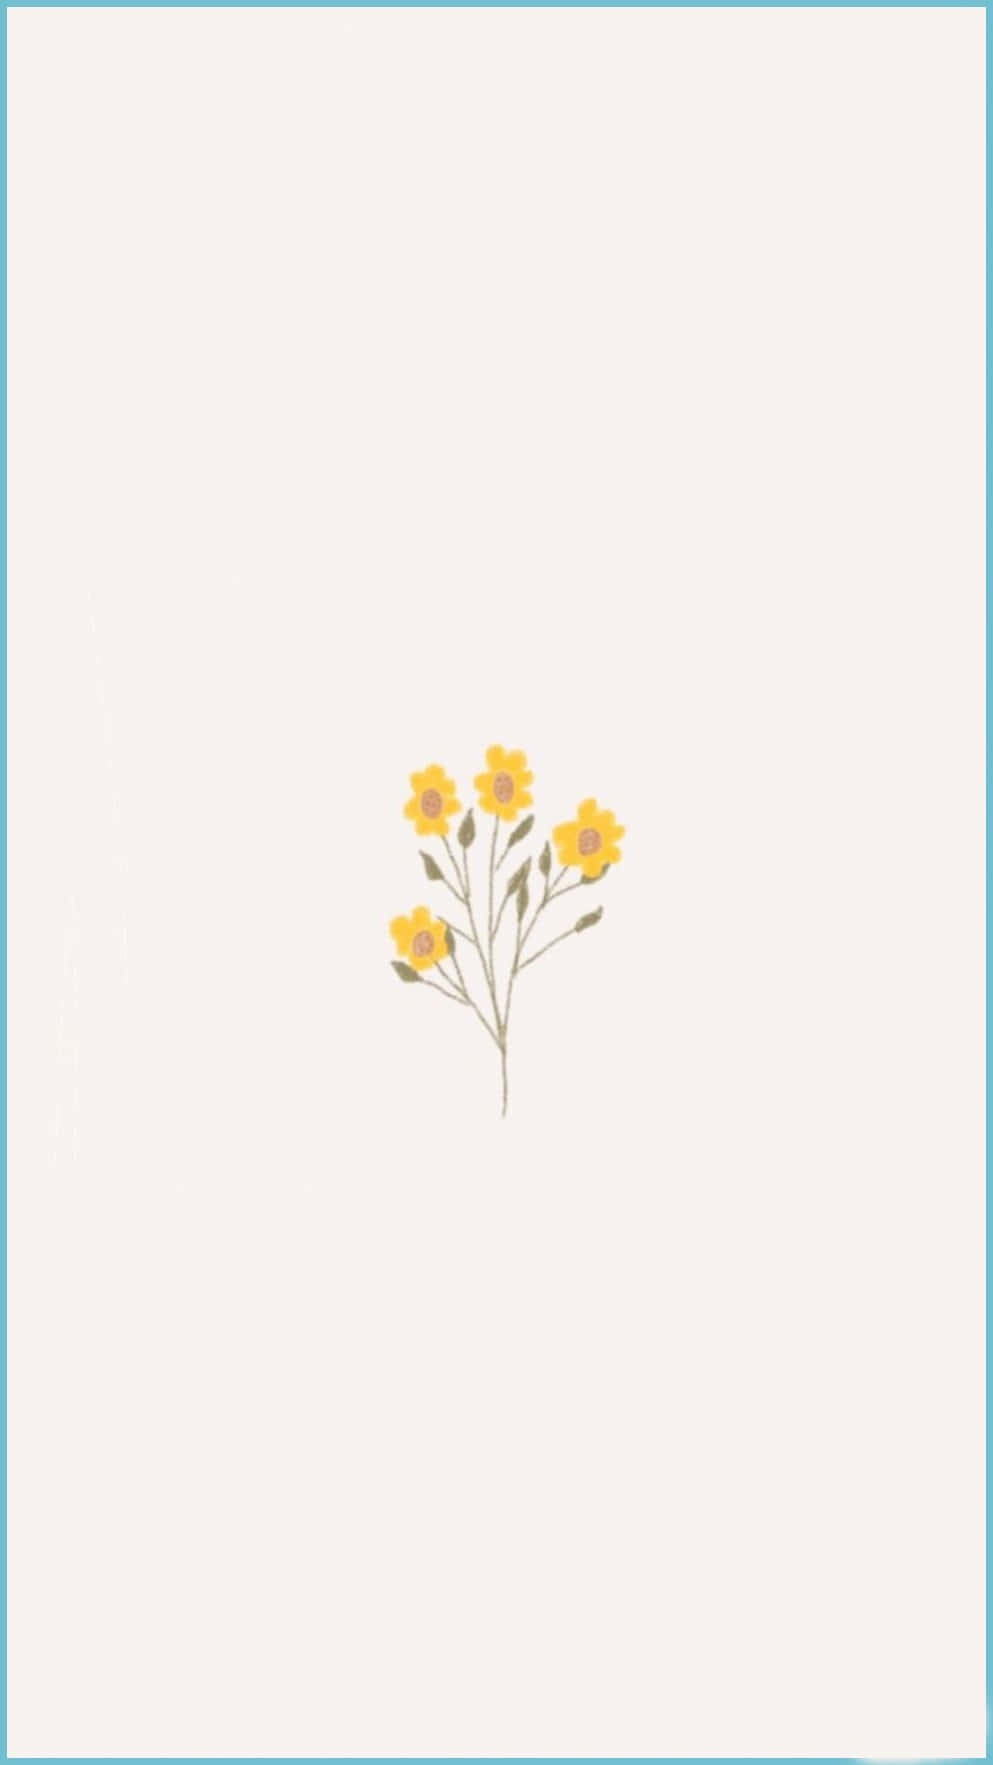 Einesüße, Pastellfarbene Blume, Die Sicherlich Schönheit In Jeden Raum Bringt. Wallpaper